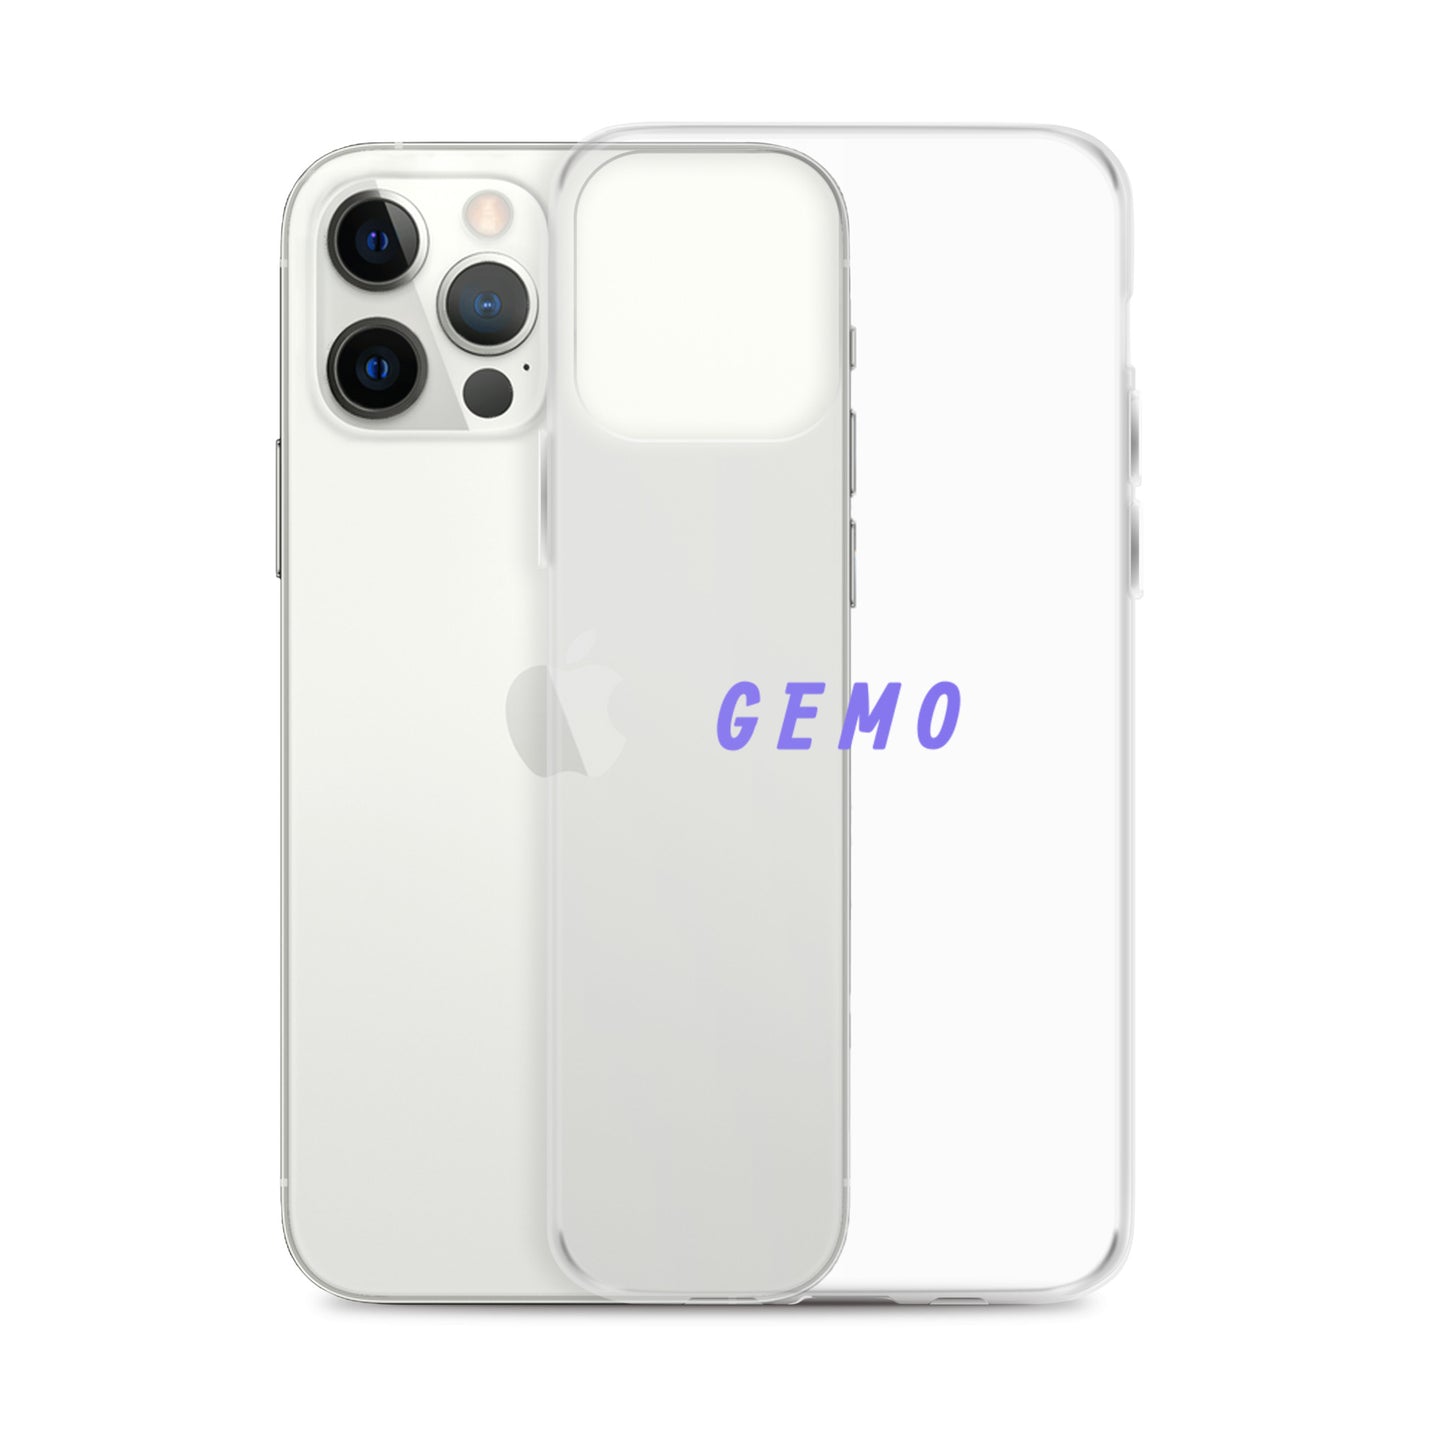 GEMO - iPhone Case